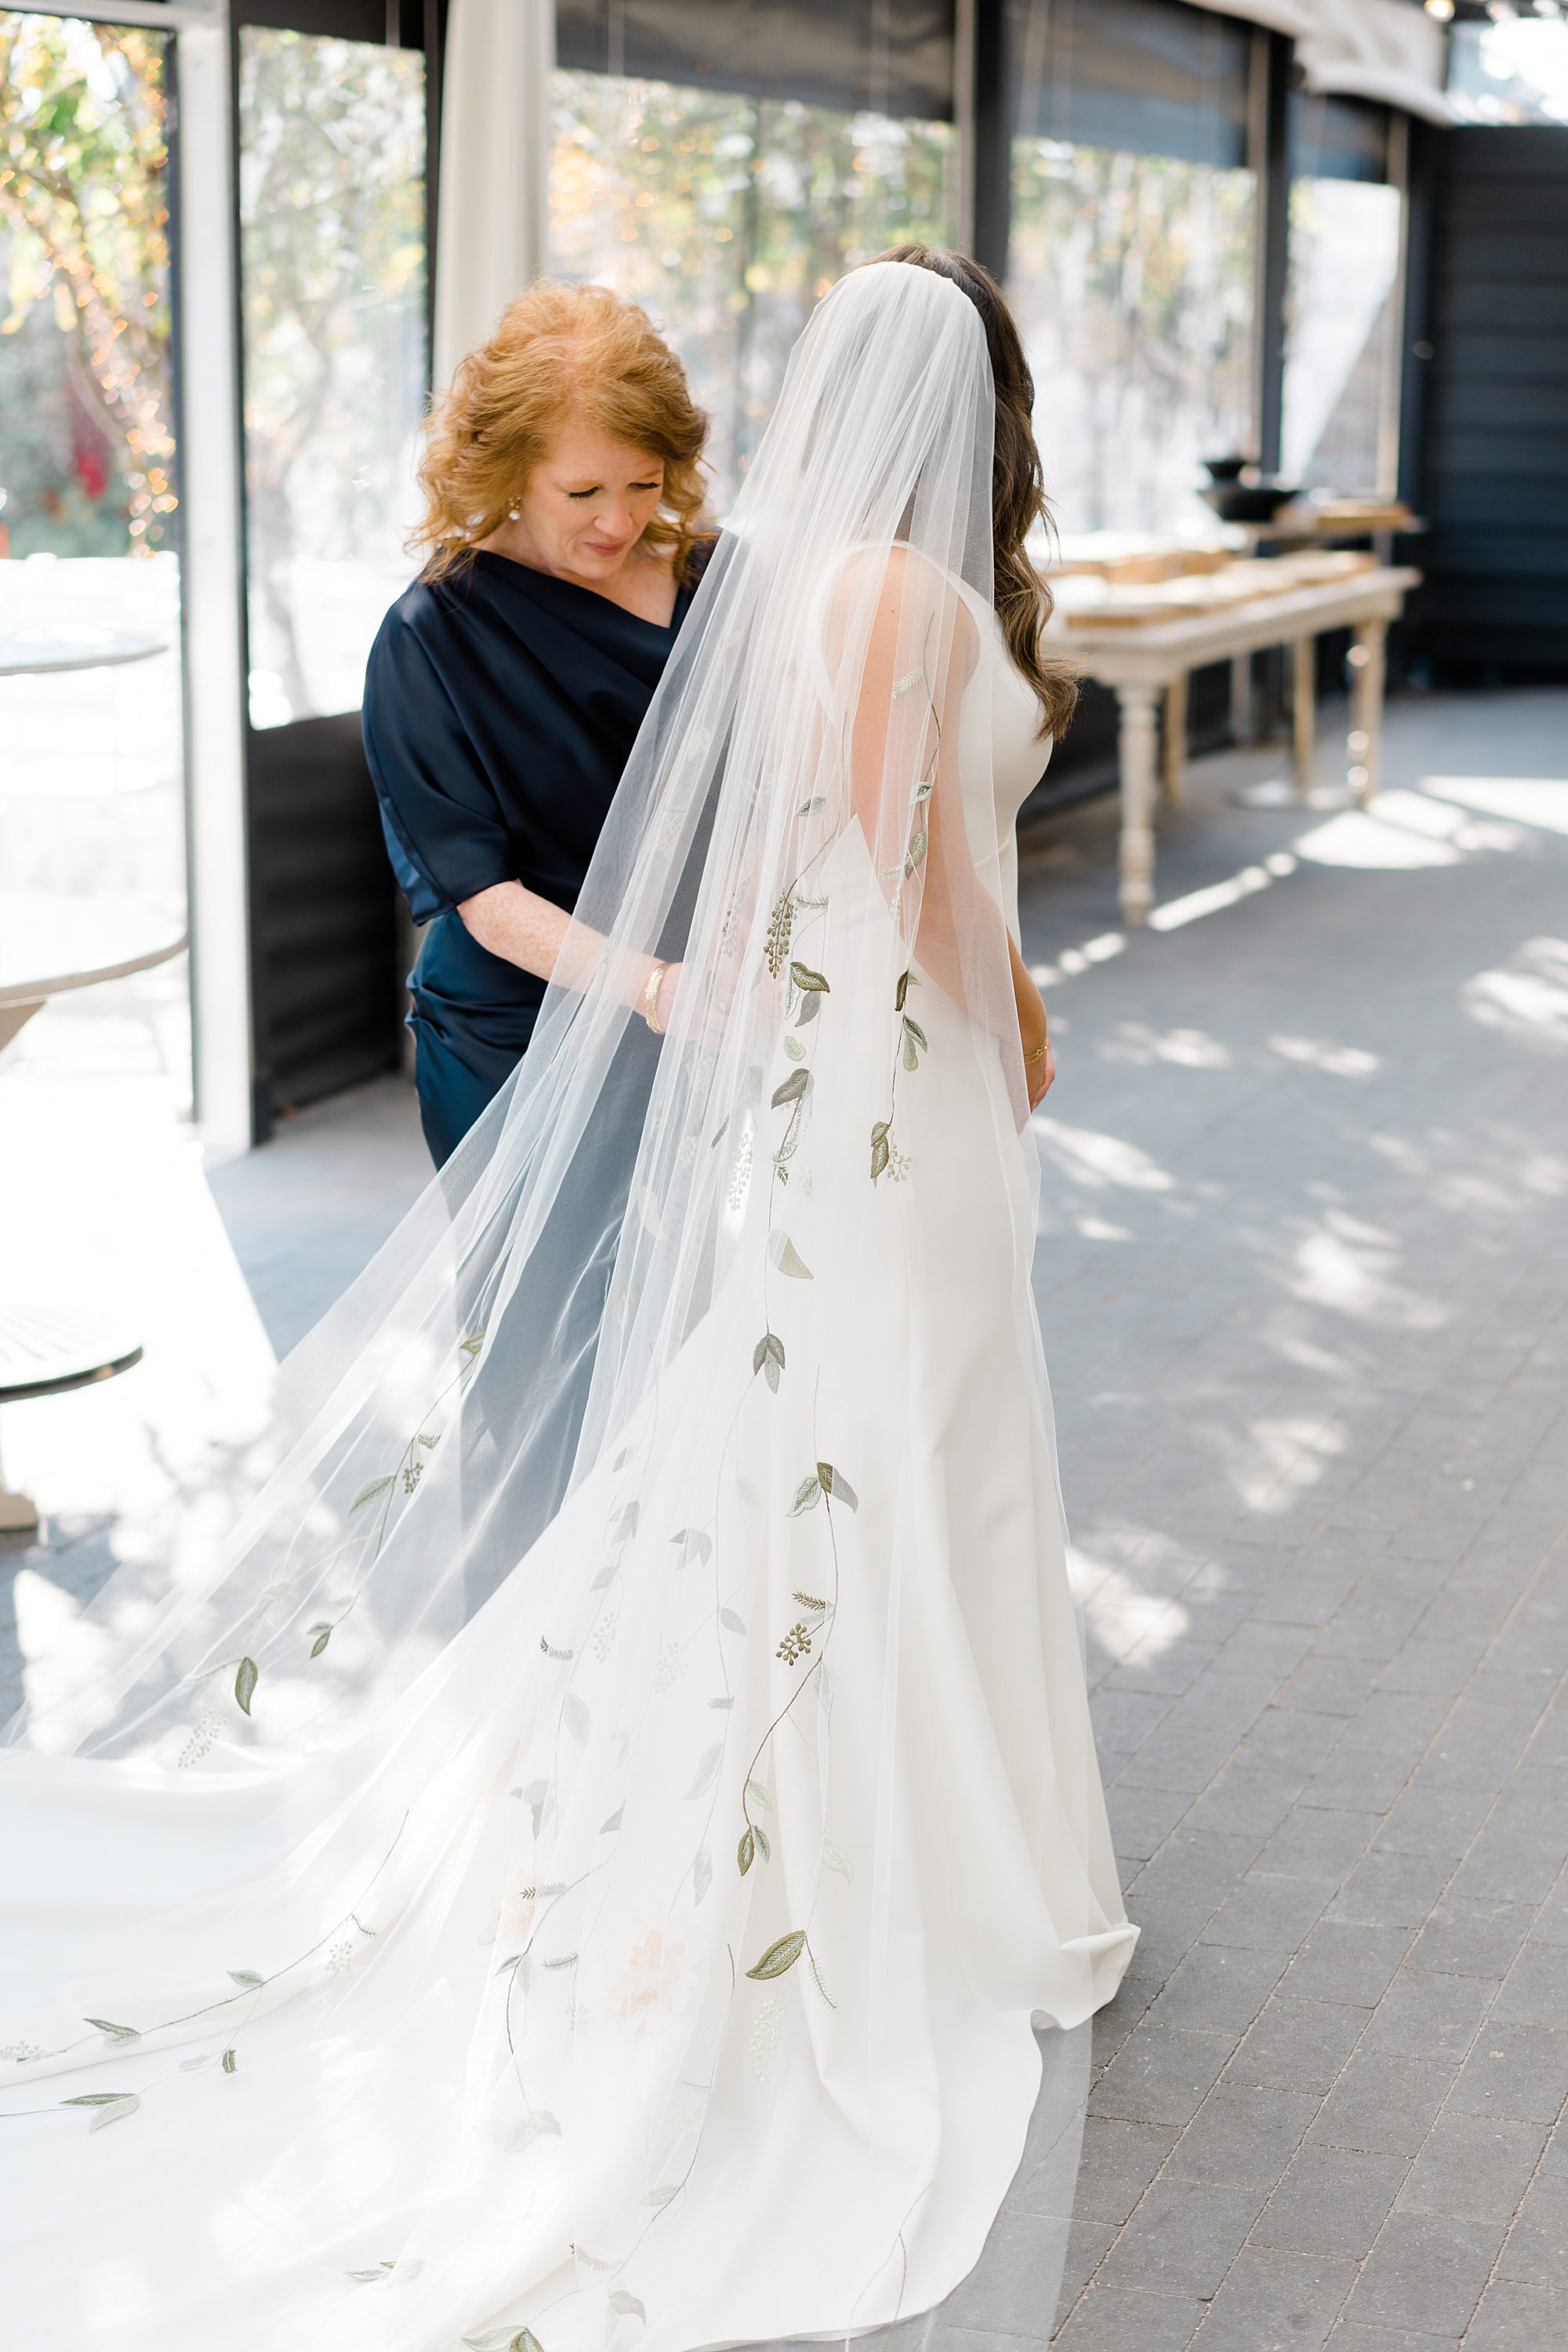 mom helps bride into wedding dress